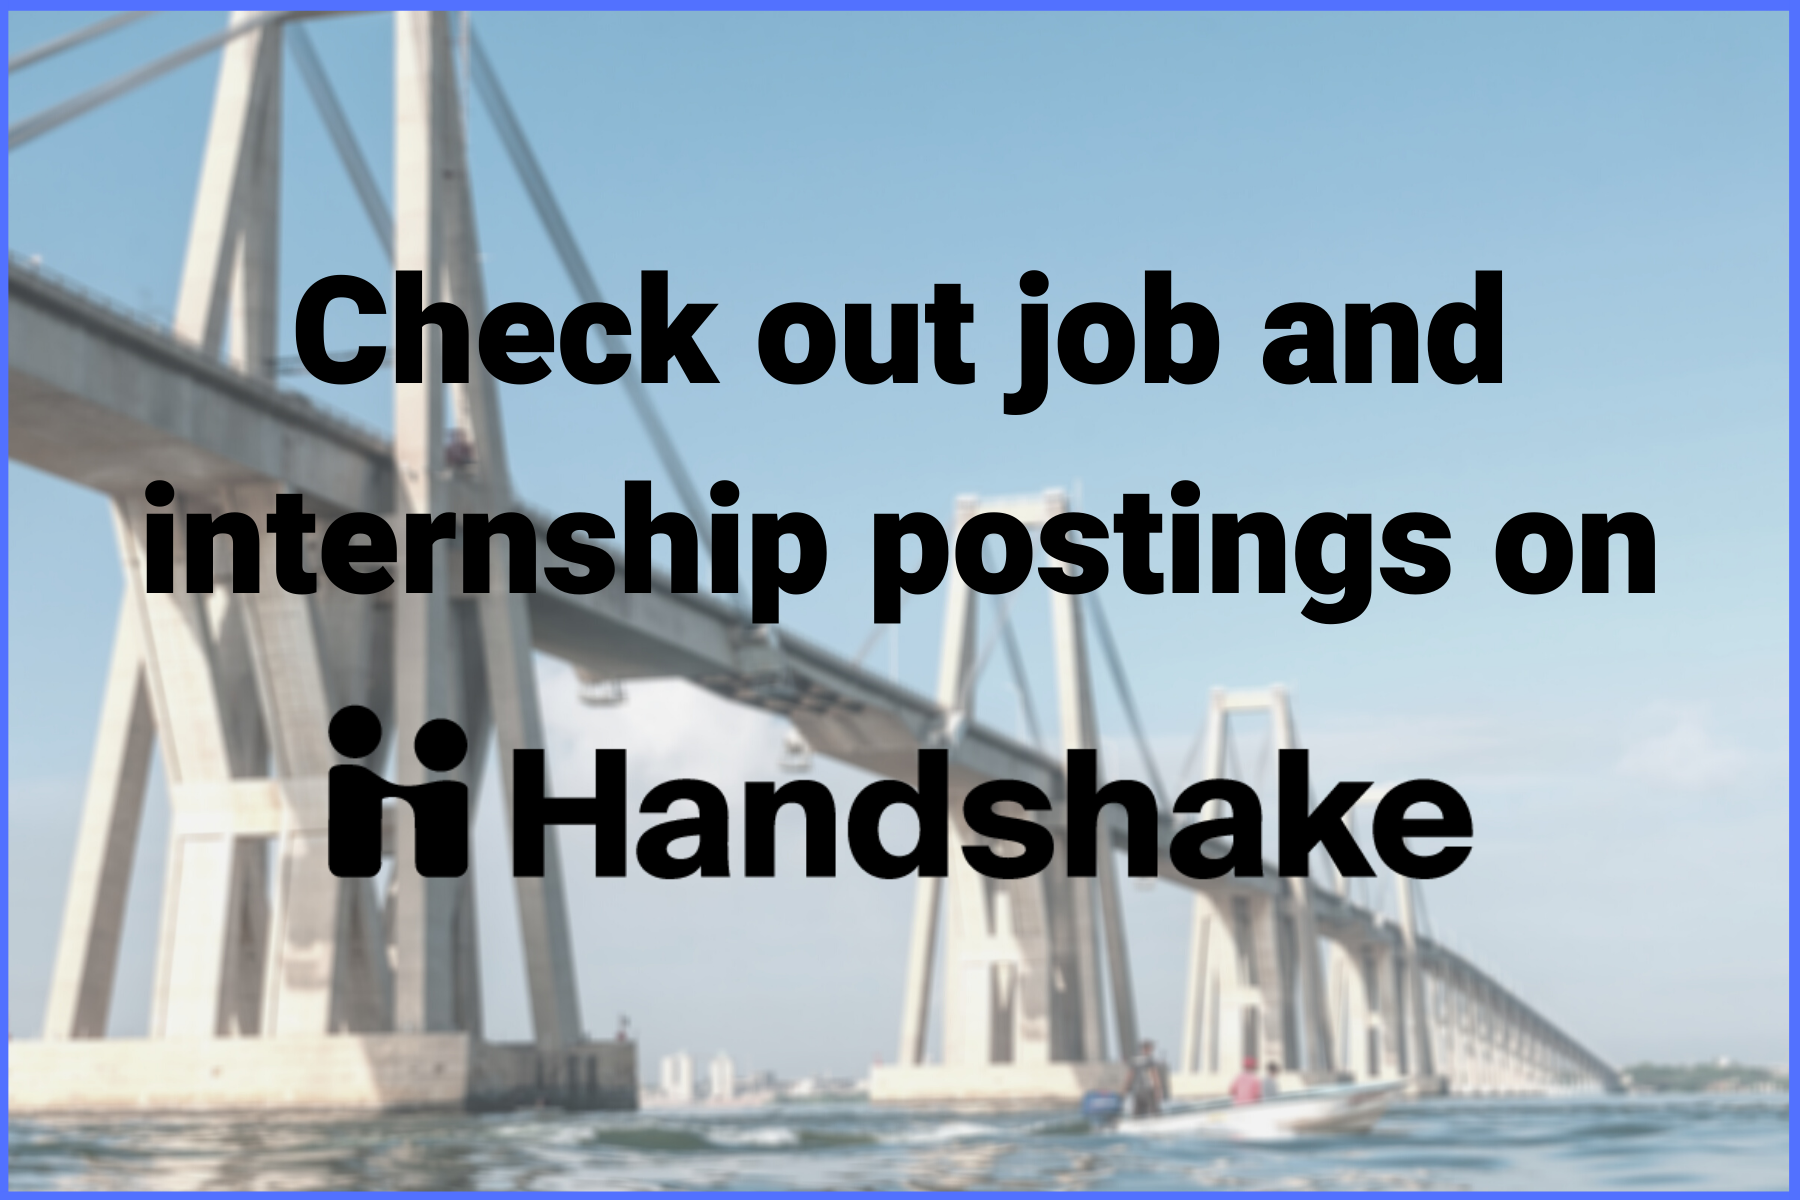 Find opportunities in engineering on Handshake